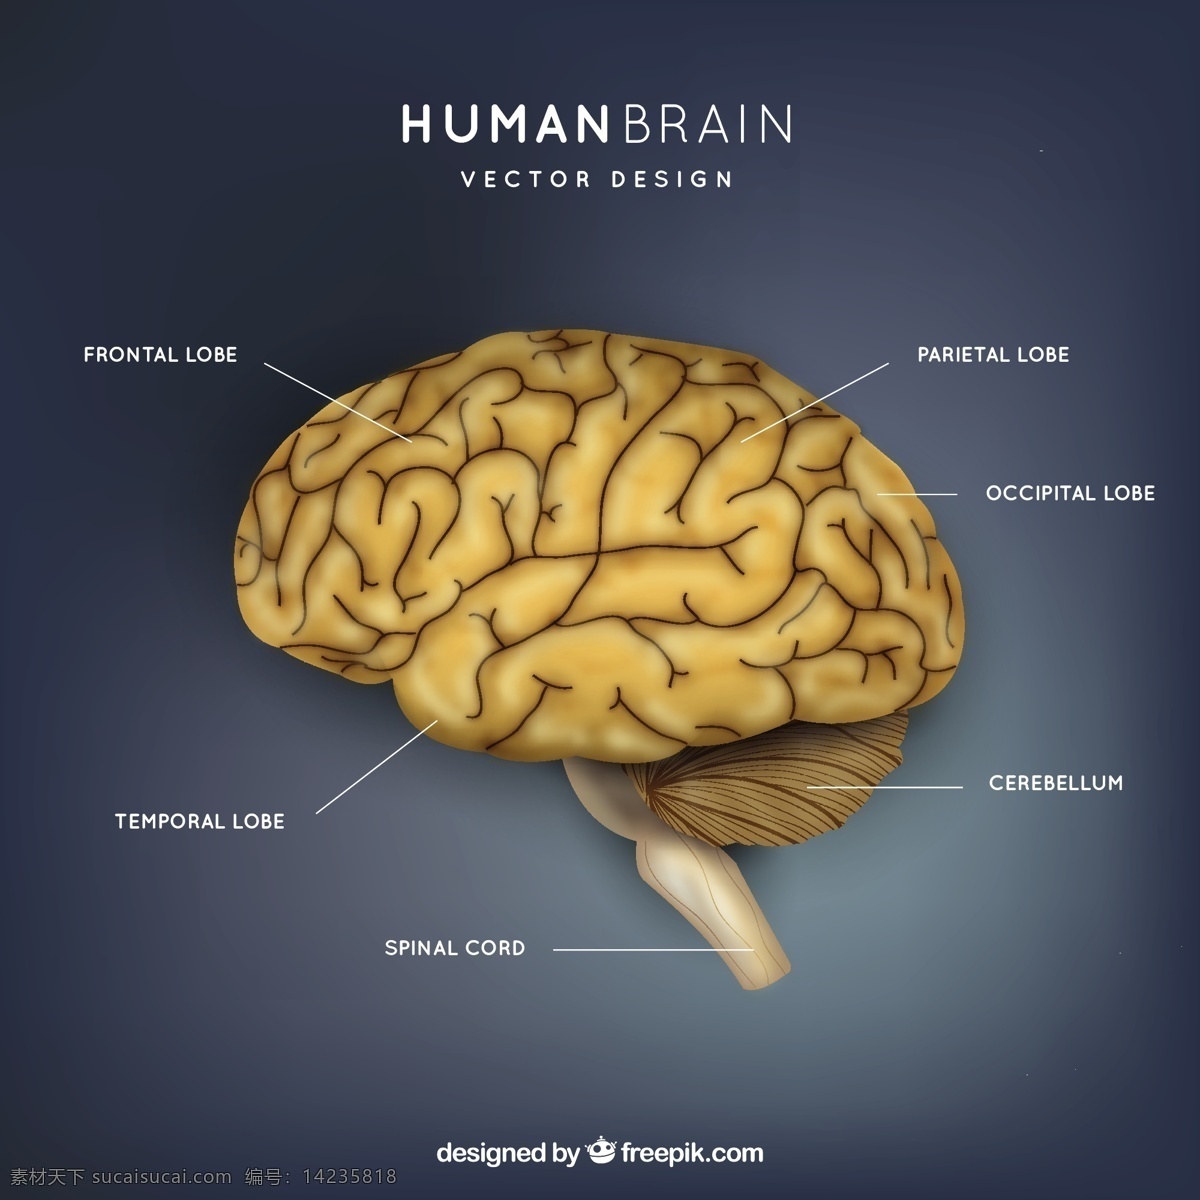 人脑的插图 爱 大脑 科学 人类 医学 学习 信息 思维 插图 知识 智力 器官 脐带 智慧 人类大脑 脊椎 额叶 叶 蓝色